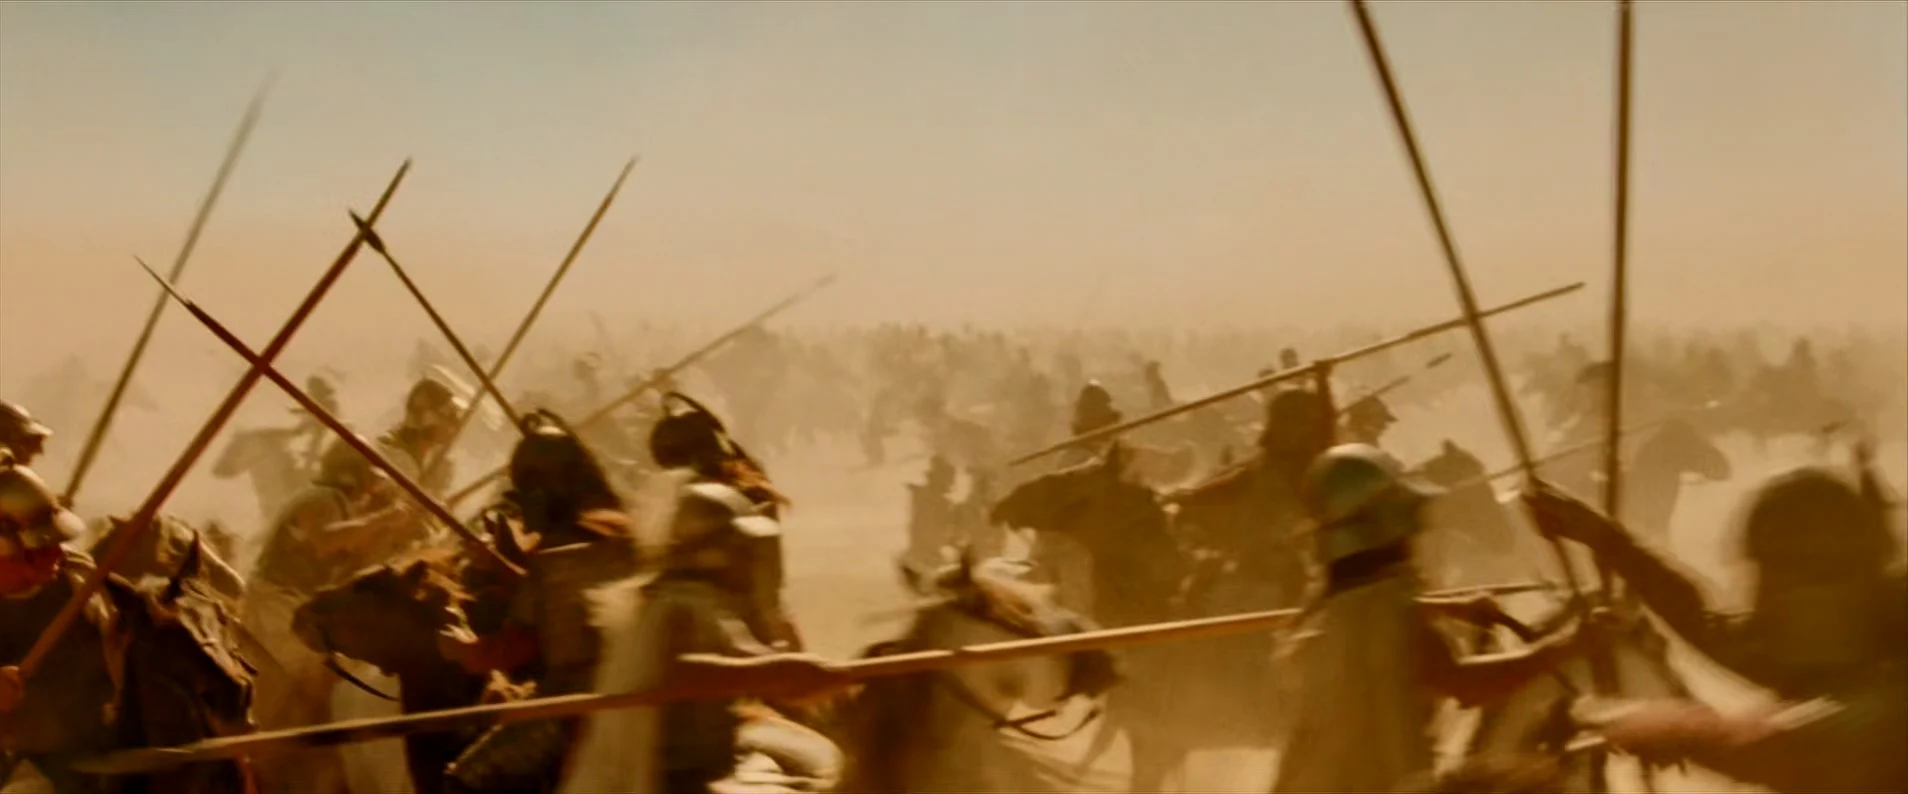 激烈的骑兵大战最后由亚历山大决出了胜利